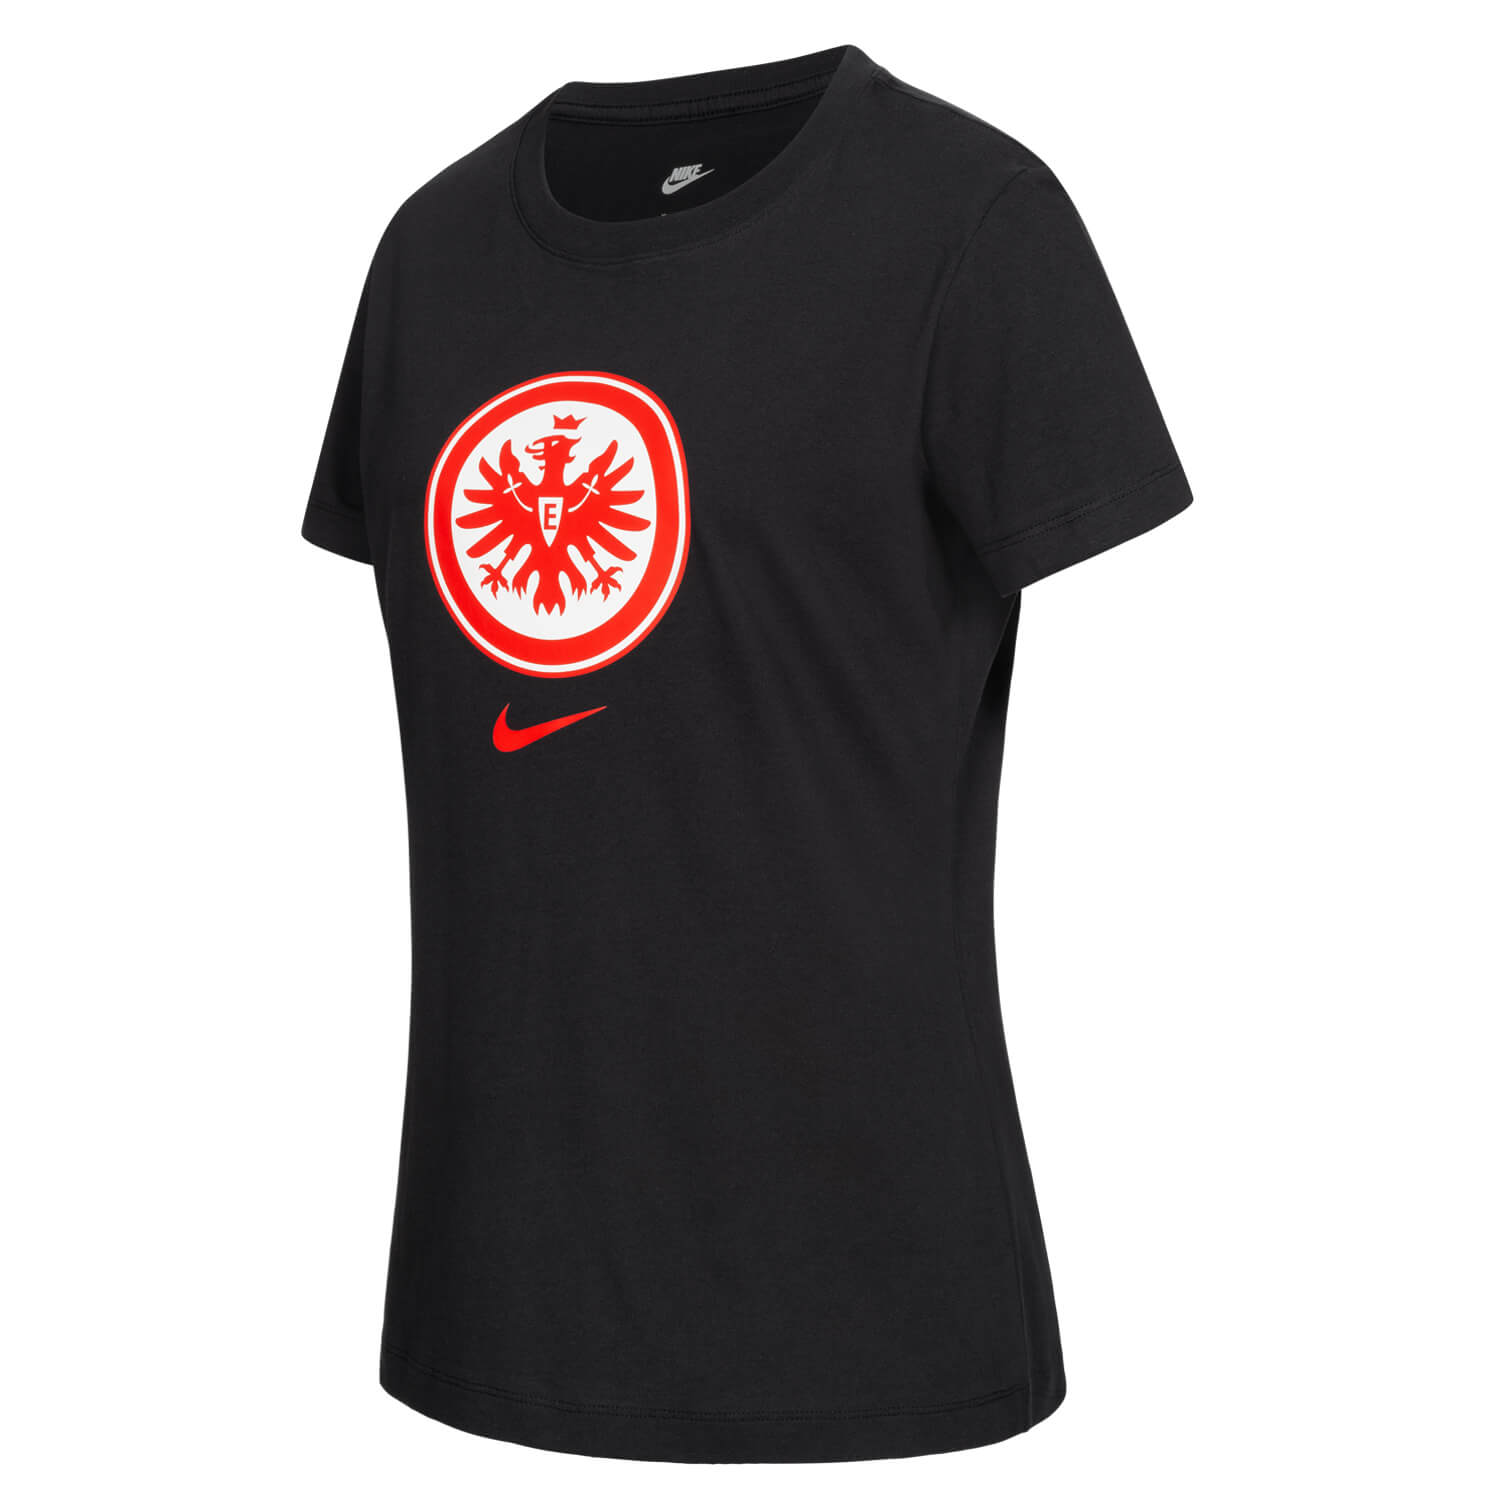 Bild 3: Nike Damen T-Shirt 23 Schwarz